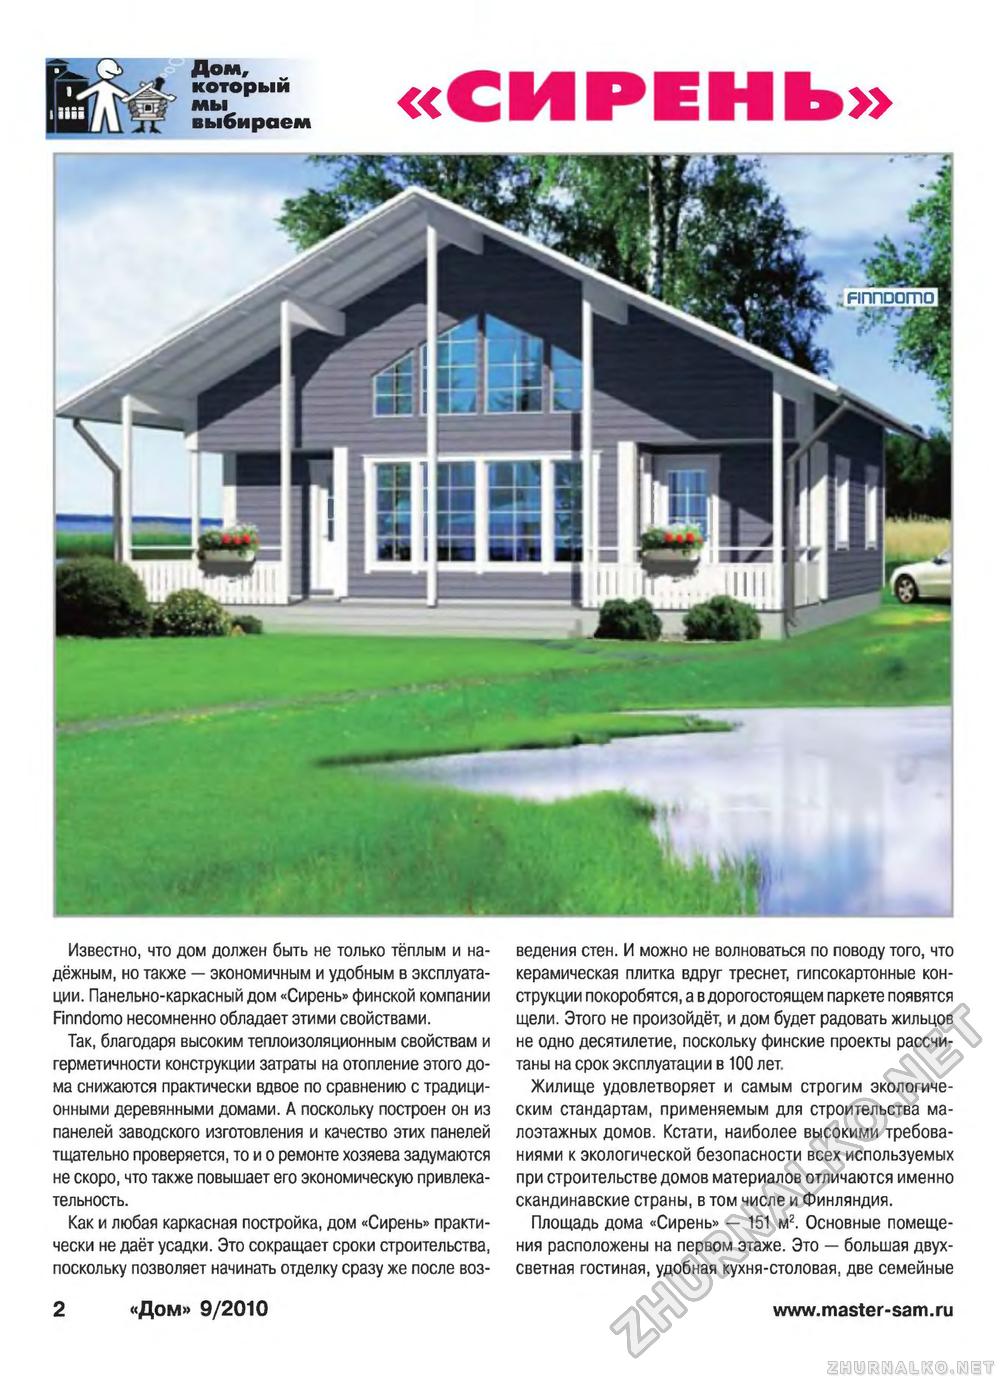 Дом 2010-09, страница 2